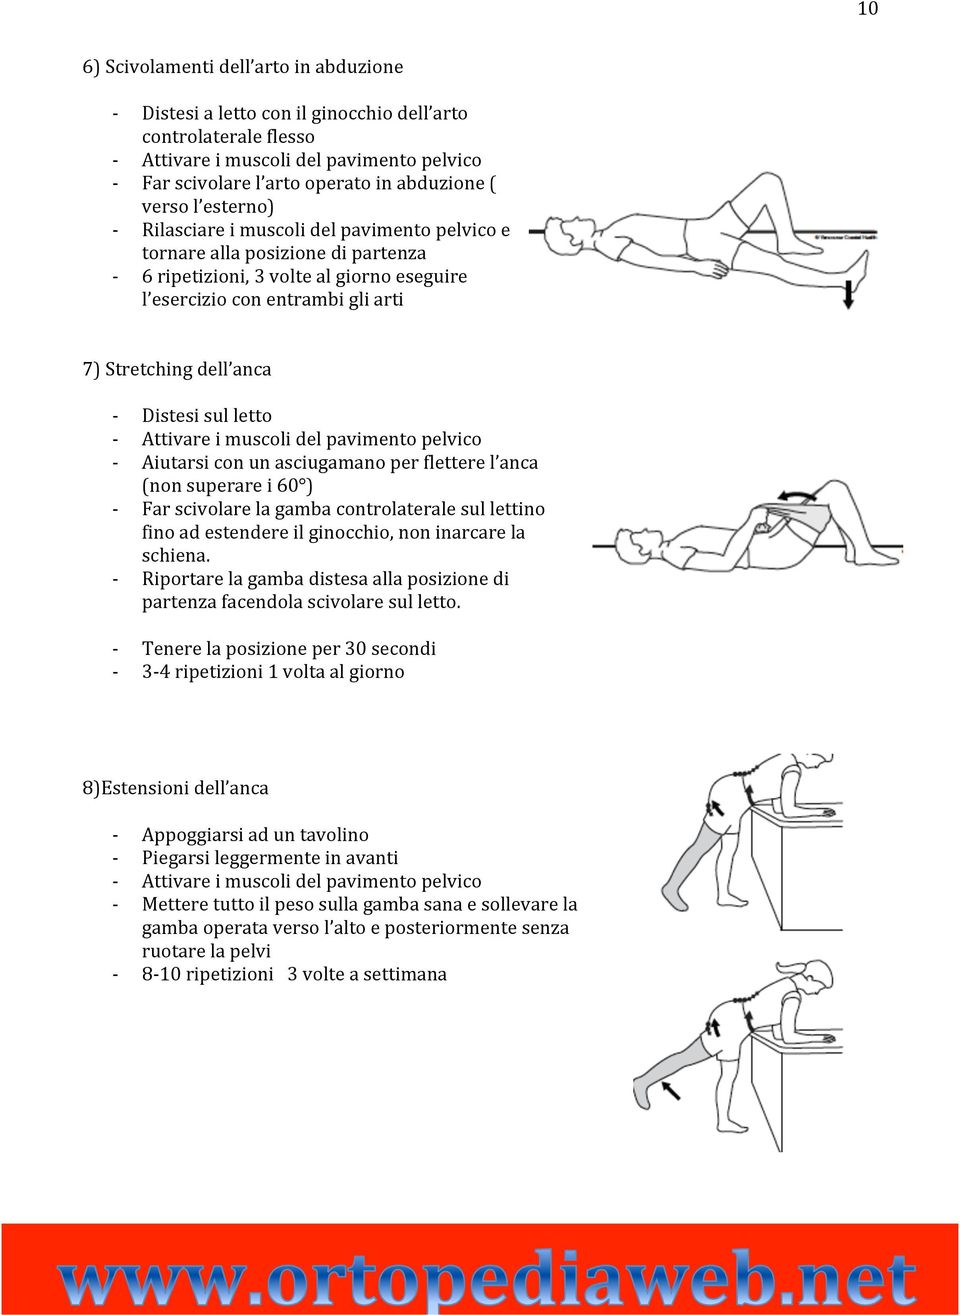 sul letto Attivare i muscoli del pavimento pelvico Aiutarsi con un asciugamano per flettere l anca (non superare i 60 ) Far scivolare la gamba controlaterale sul lettino fino ad estendere il